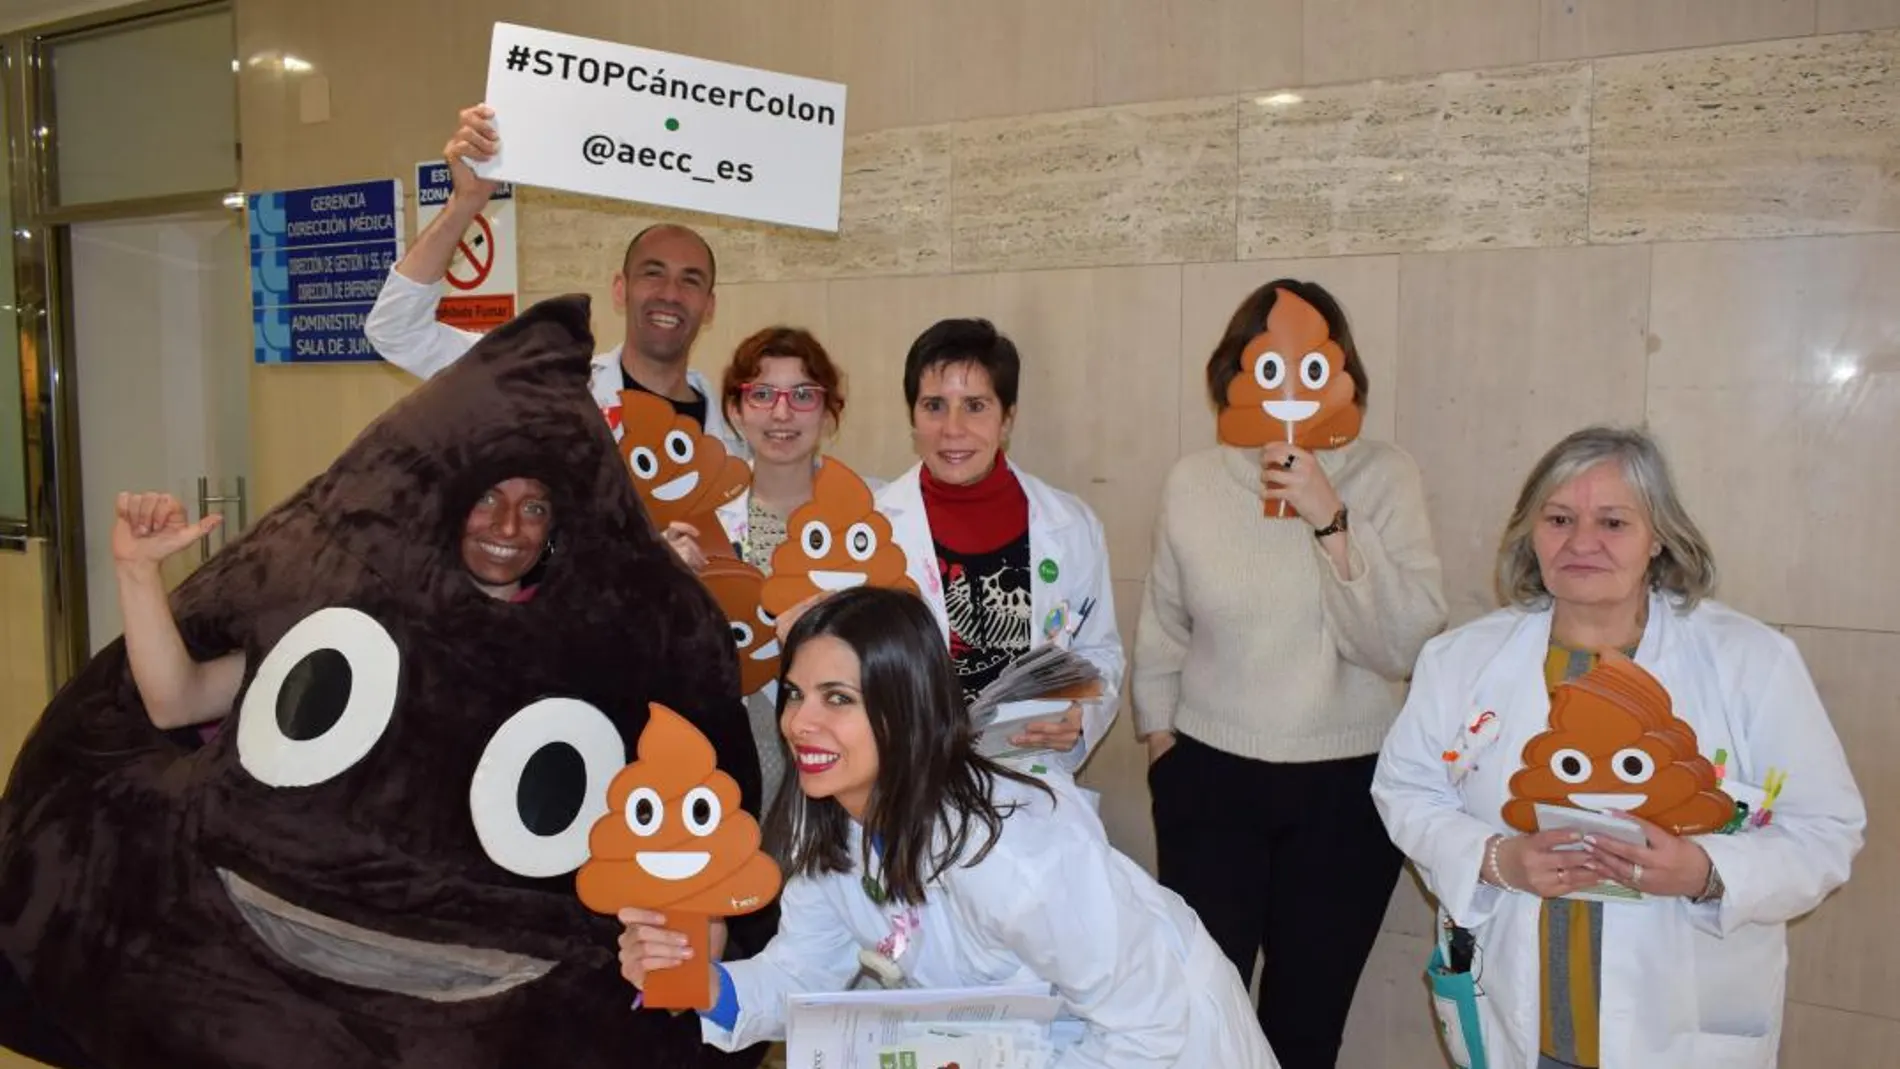 Promoción o «road show» con la imagen del emoticono de la caca de Whatsapp, que la AECC ha realizado en el Hispital Clínico de Valladolid para concienciar sobre la prevención del cáncer de colon